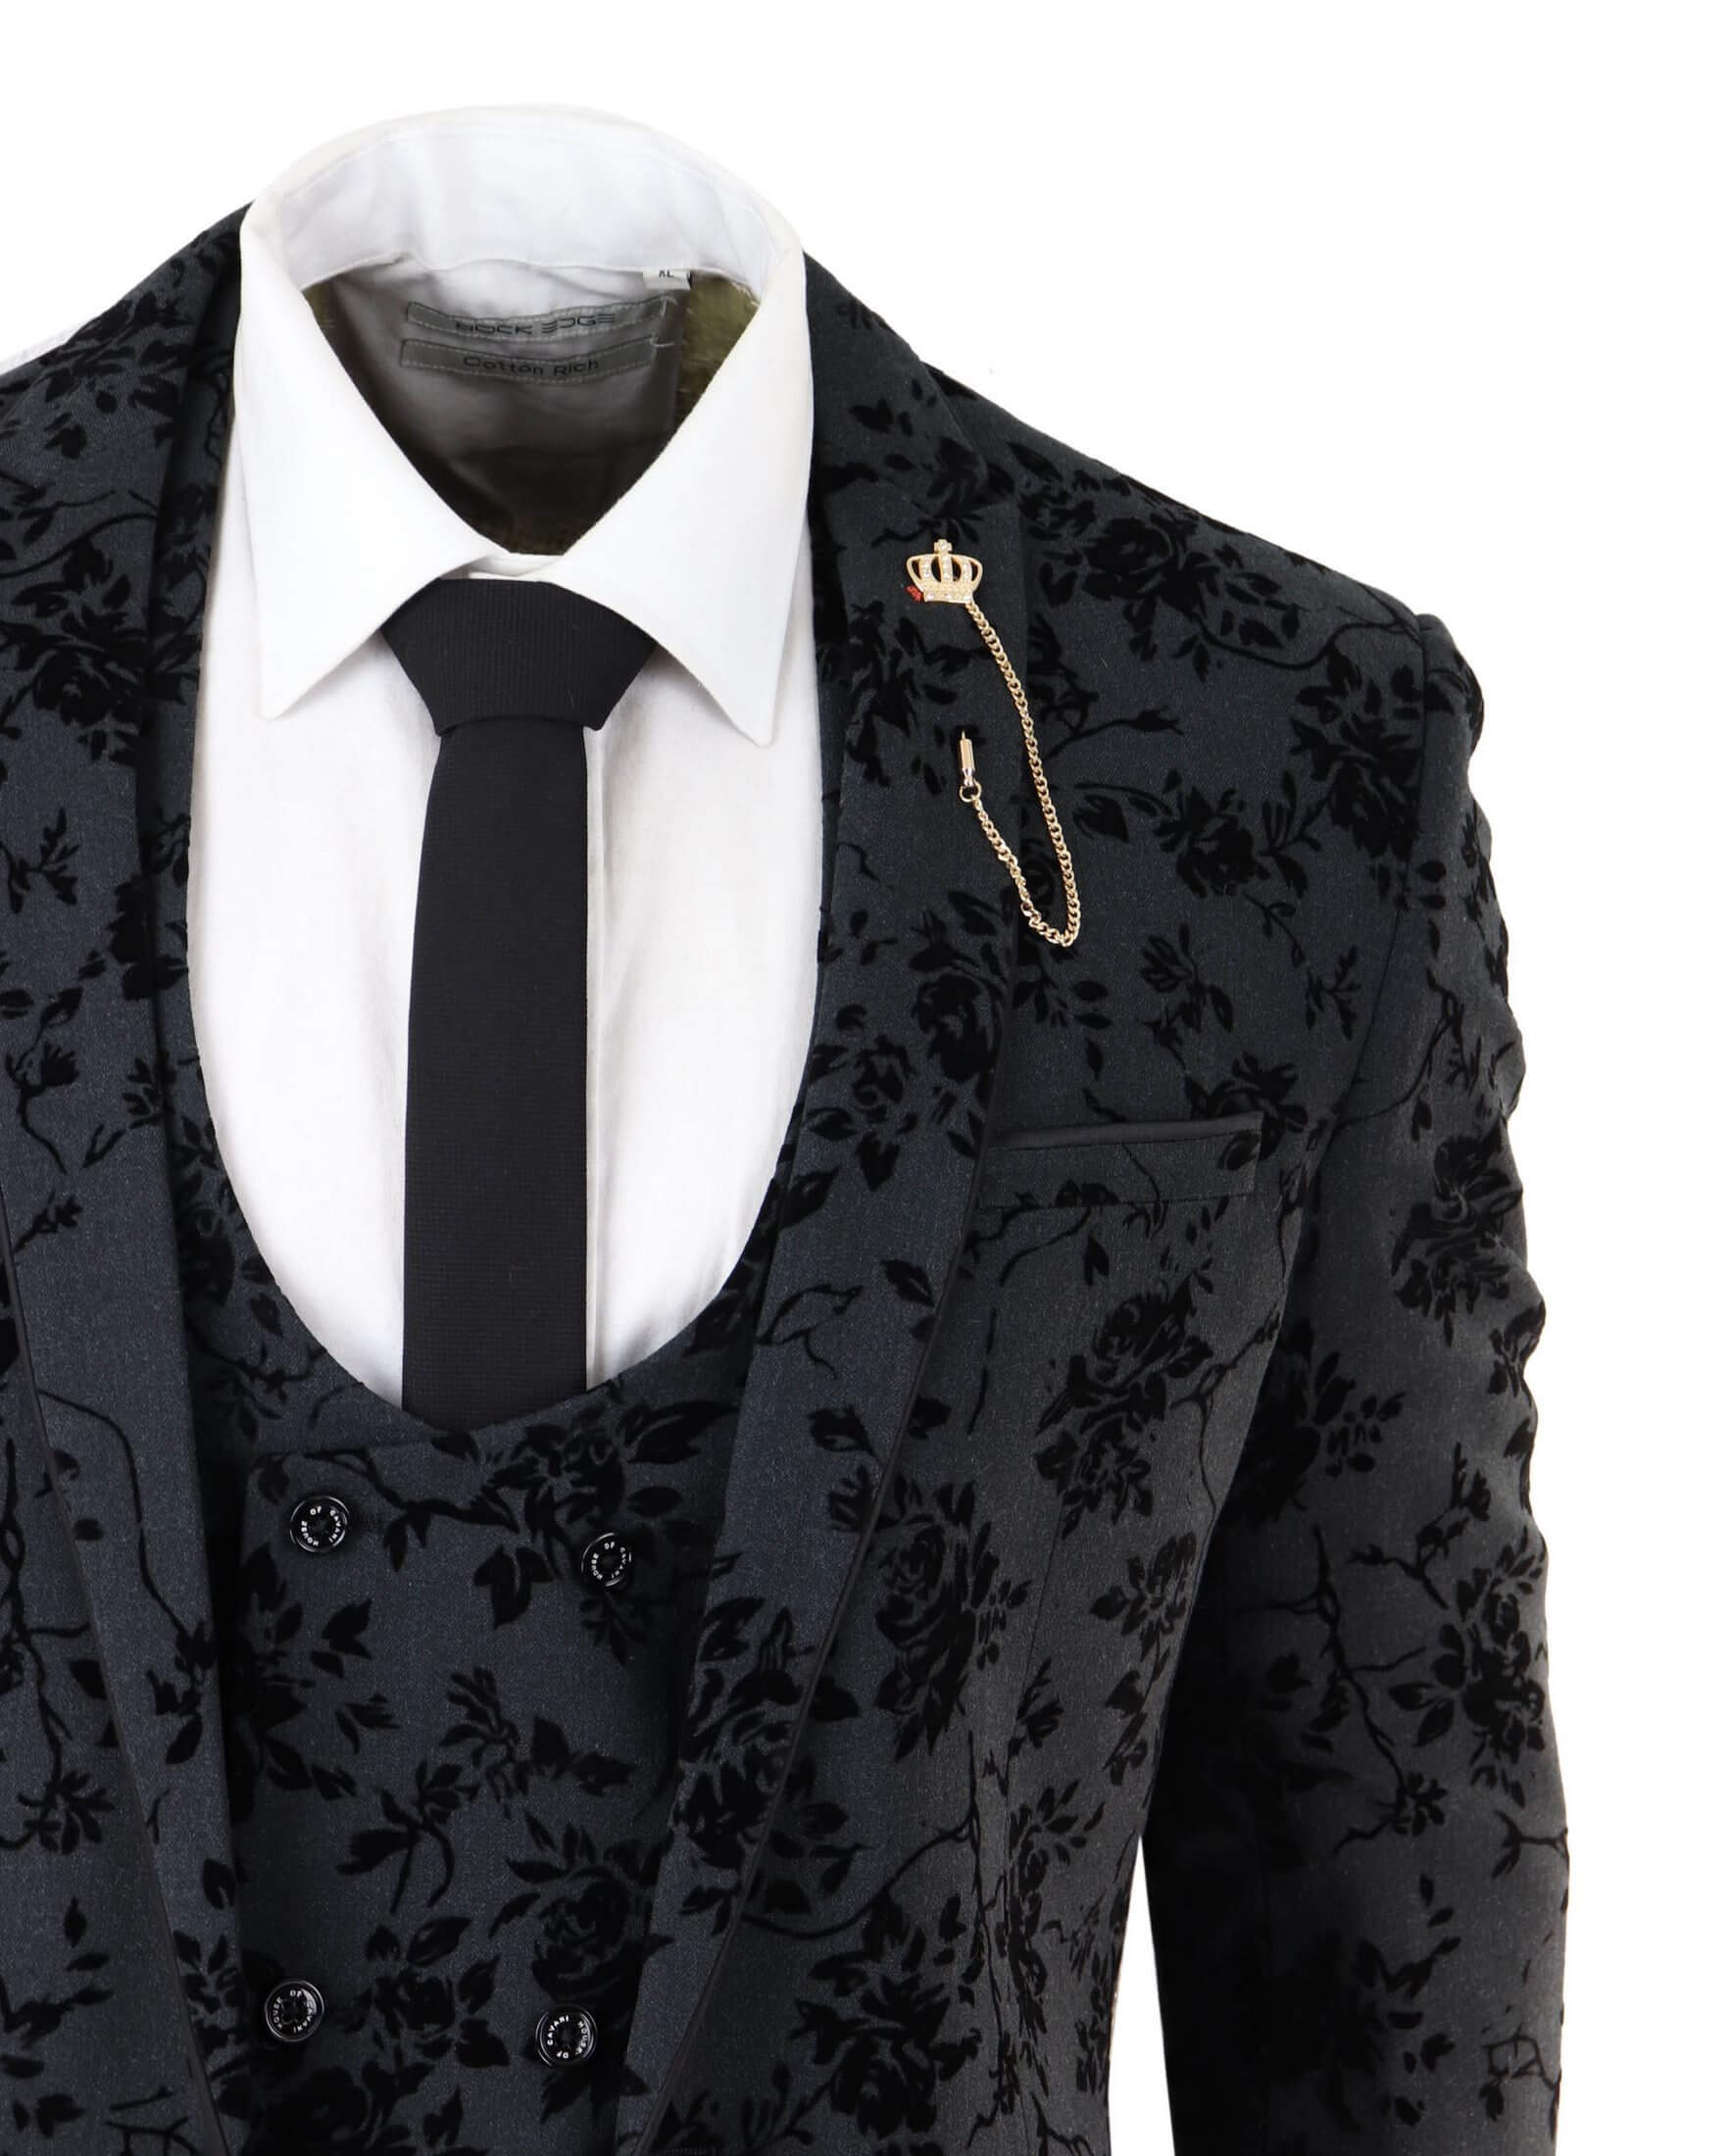 Black velvet suit